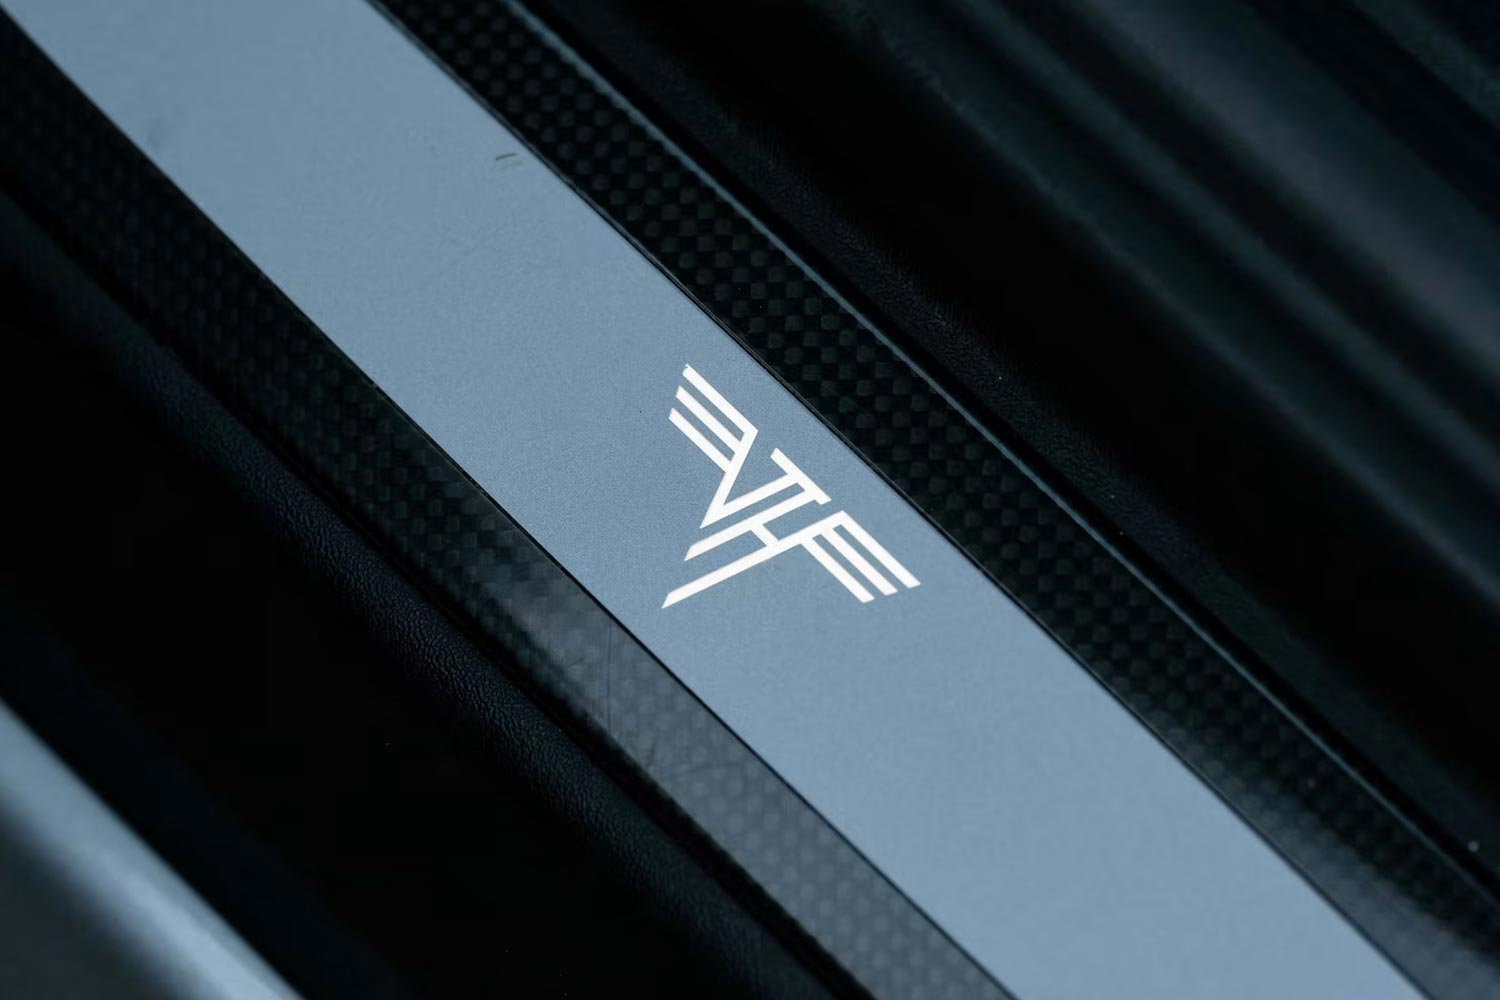 The Van Halen "VH" logo on carbon fiber door sills in Eddie Van Halen's 2016 Porsche 911 GT3 RS